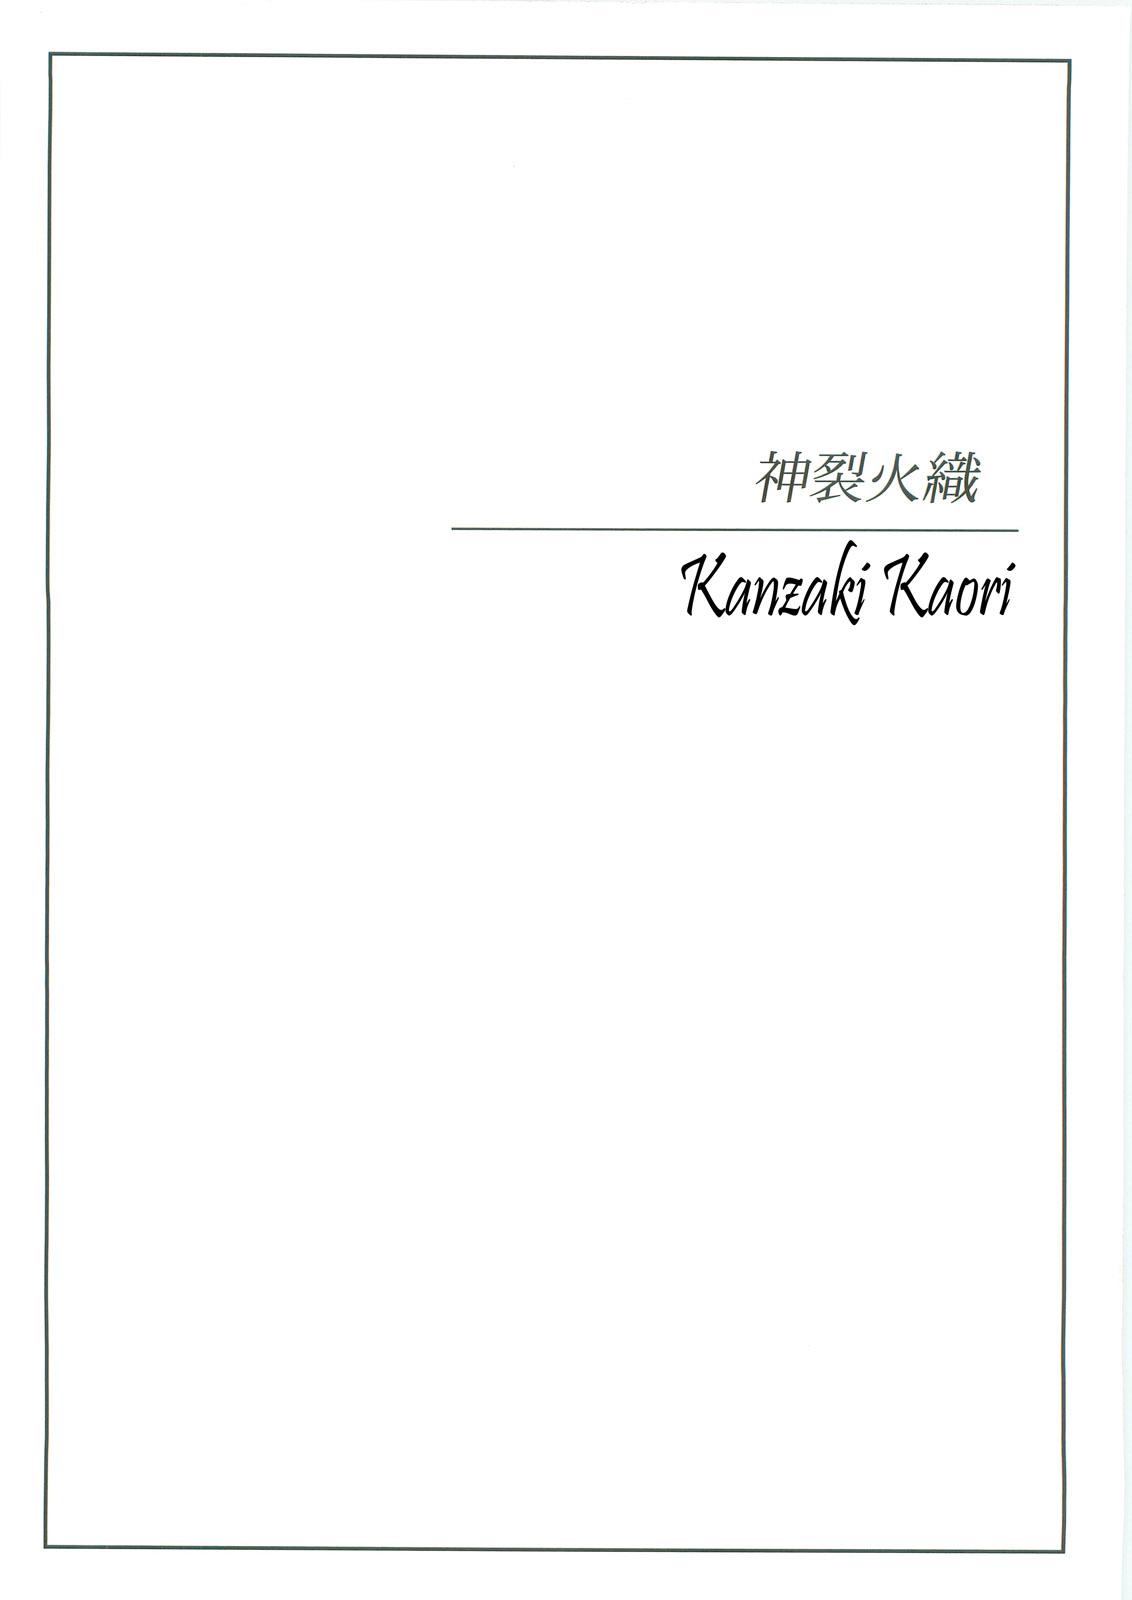 Star Kyonyuu Mokuroku | Busty Index - Toaru majutsu no index Interacial - Page 2